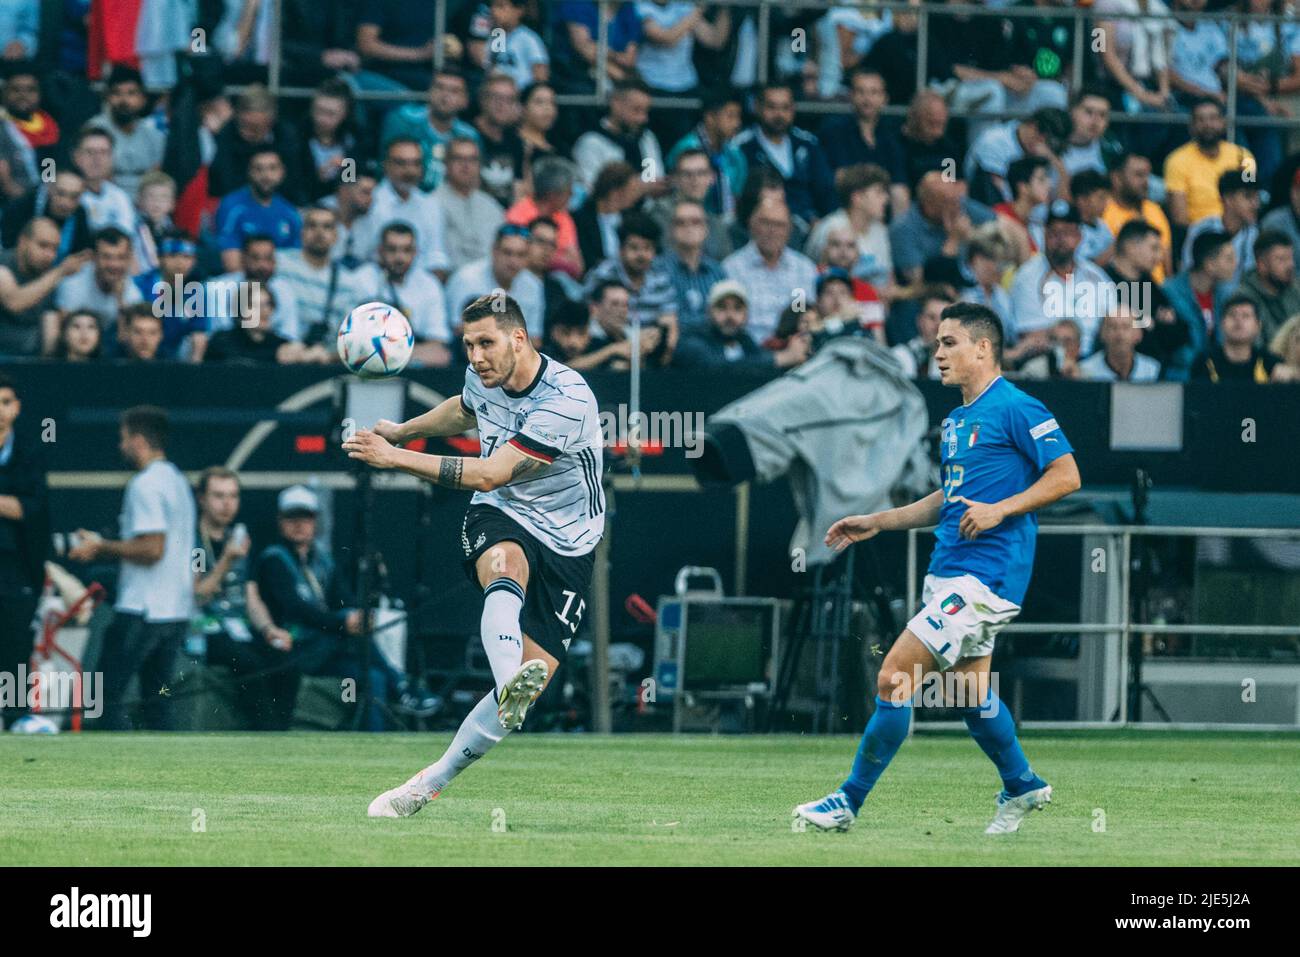 Mönchengladbach, Borussia-Park, 14.06.22: Niklas Süle (L) (Deutschland) gegen Giacono Raspadori beim Länderspiel zwischen Deutschland vs. Italien. Foto: Stockfoto